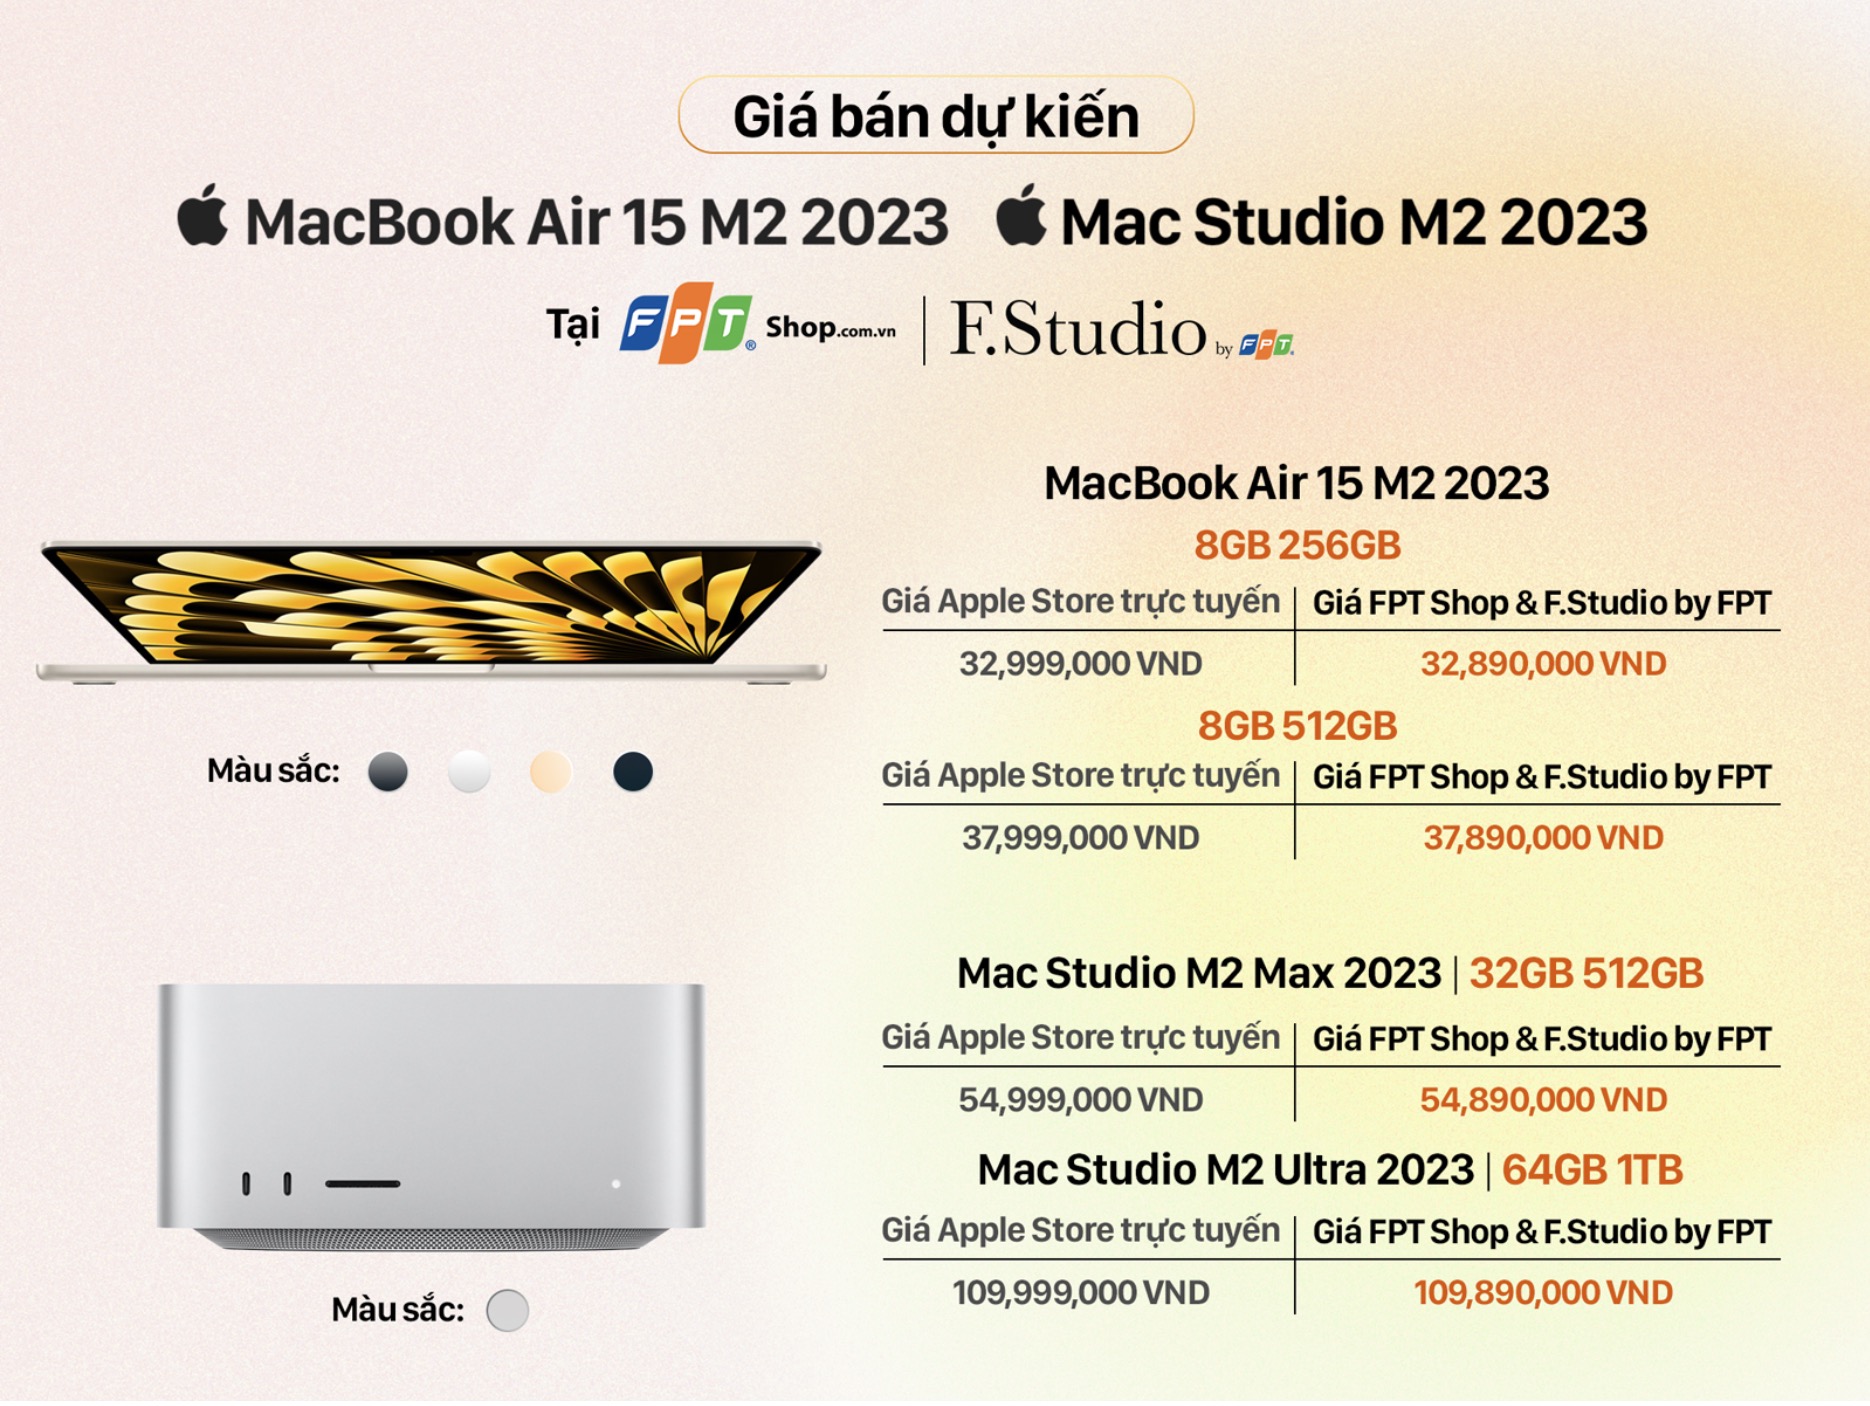 Đây là giá bán các sản phẩm mới ra mắt của Apple tại Việt Nam, bao gồm một chiếc MacBook Air 15 inch